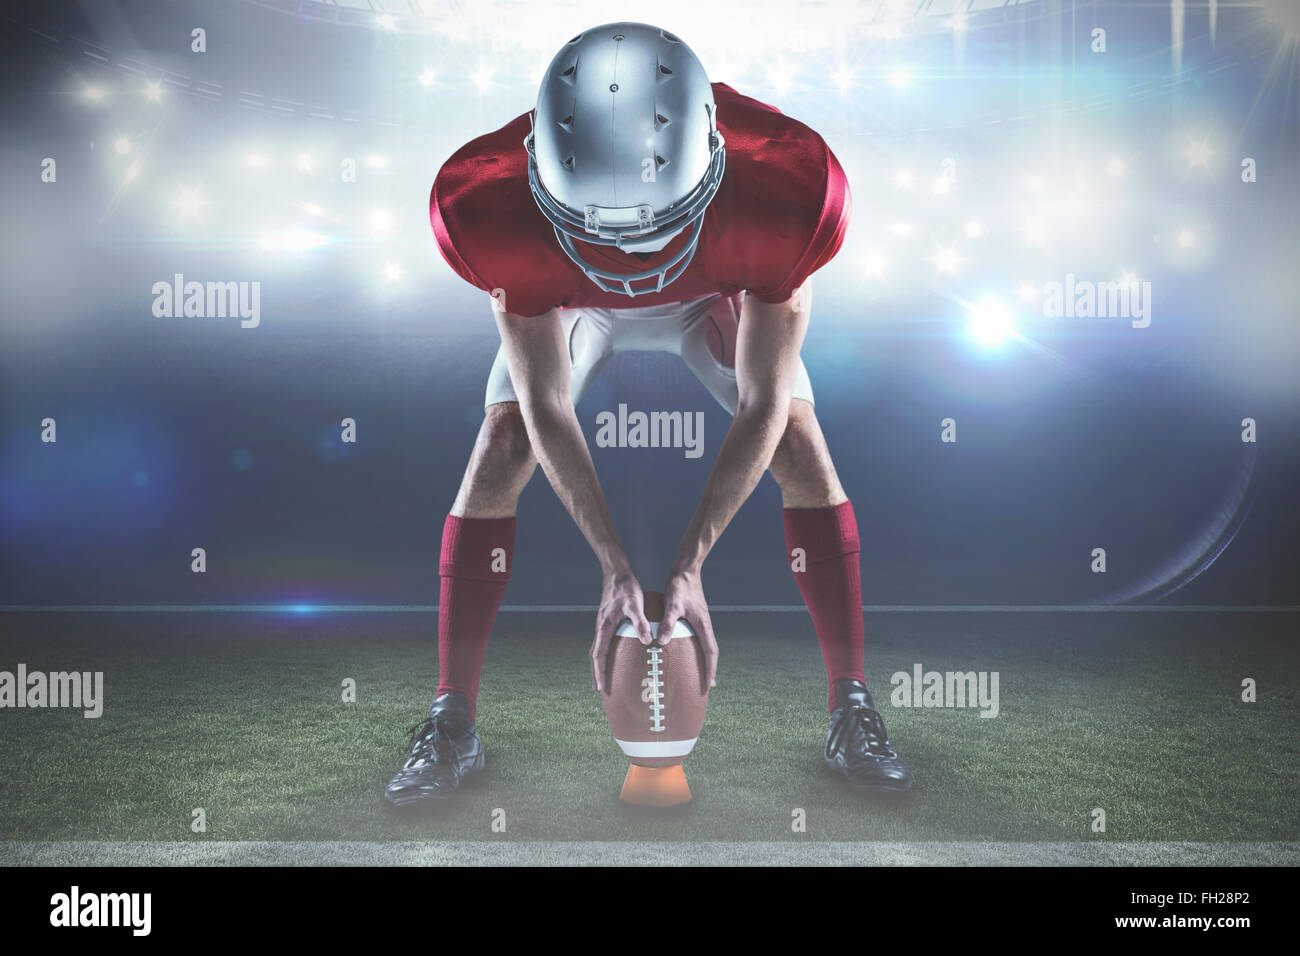 Immagine composita di lunghezza completa di sports player posizionando la palla tra le gambe Foto Stock